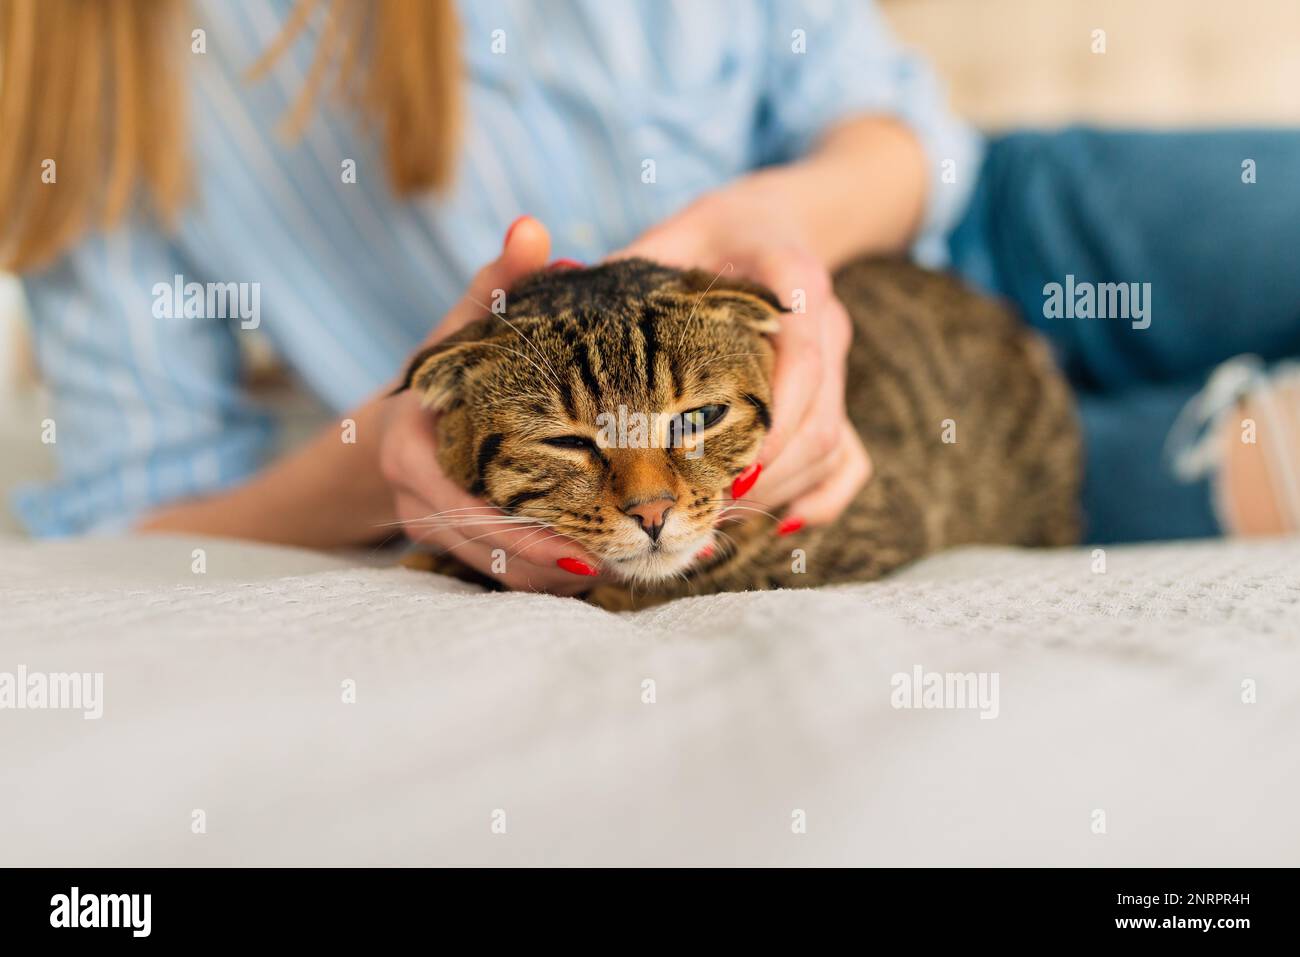 En gros plan, une femme tient dans ses mains un adorable chat écossais tabby aux yeux verts qui s'assoit sur ses genoux dans ses bras et l'encadre, le concept aimant et les animaux de compagnie Banque D'Images